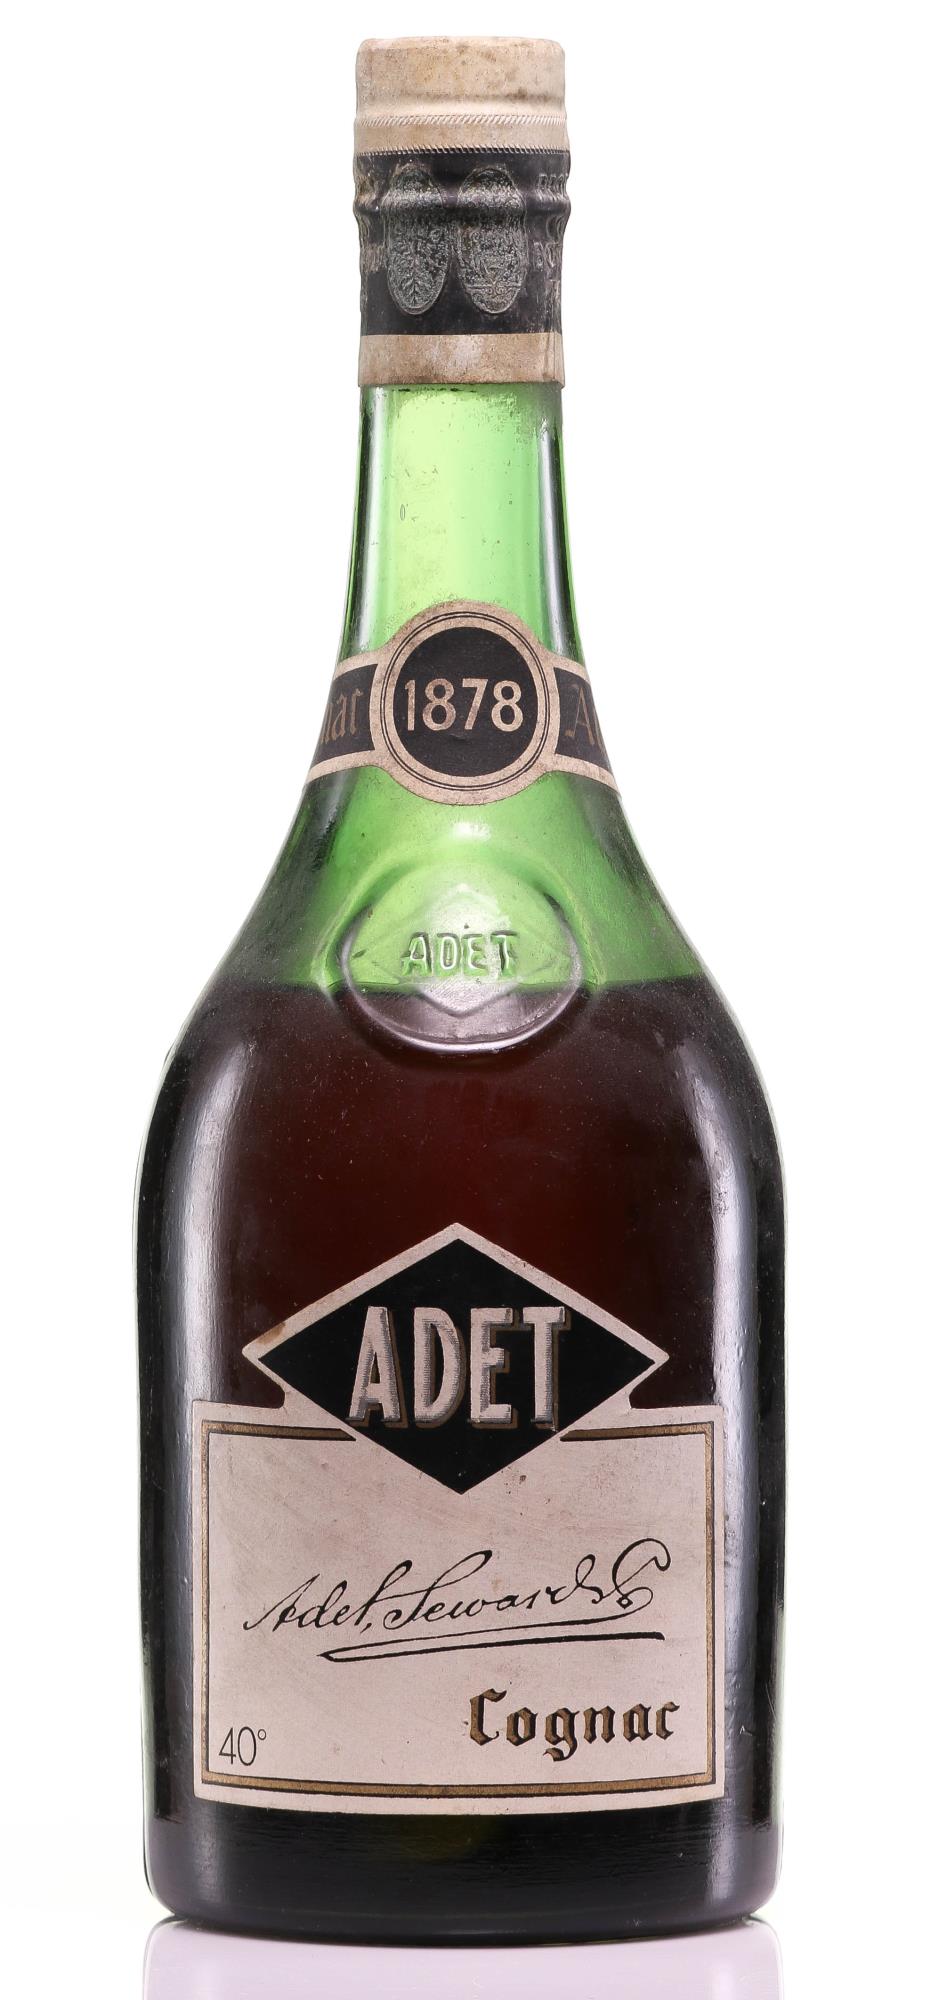 Adet Seward & Co Cognac 1878 Vintage Spirits - Rue Pinard